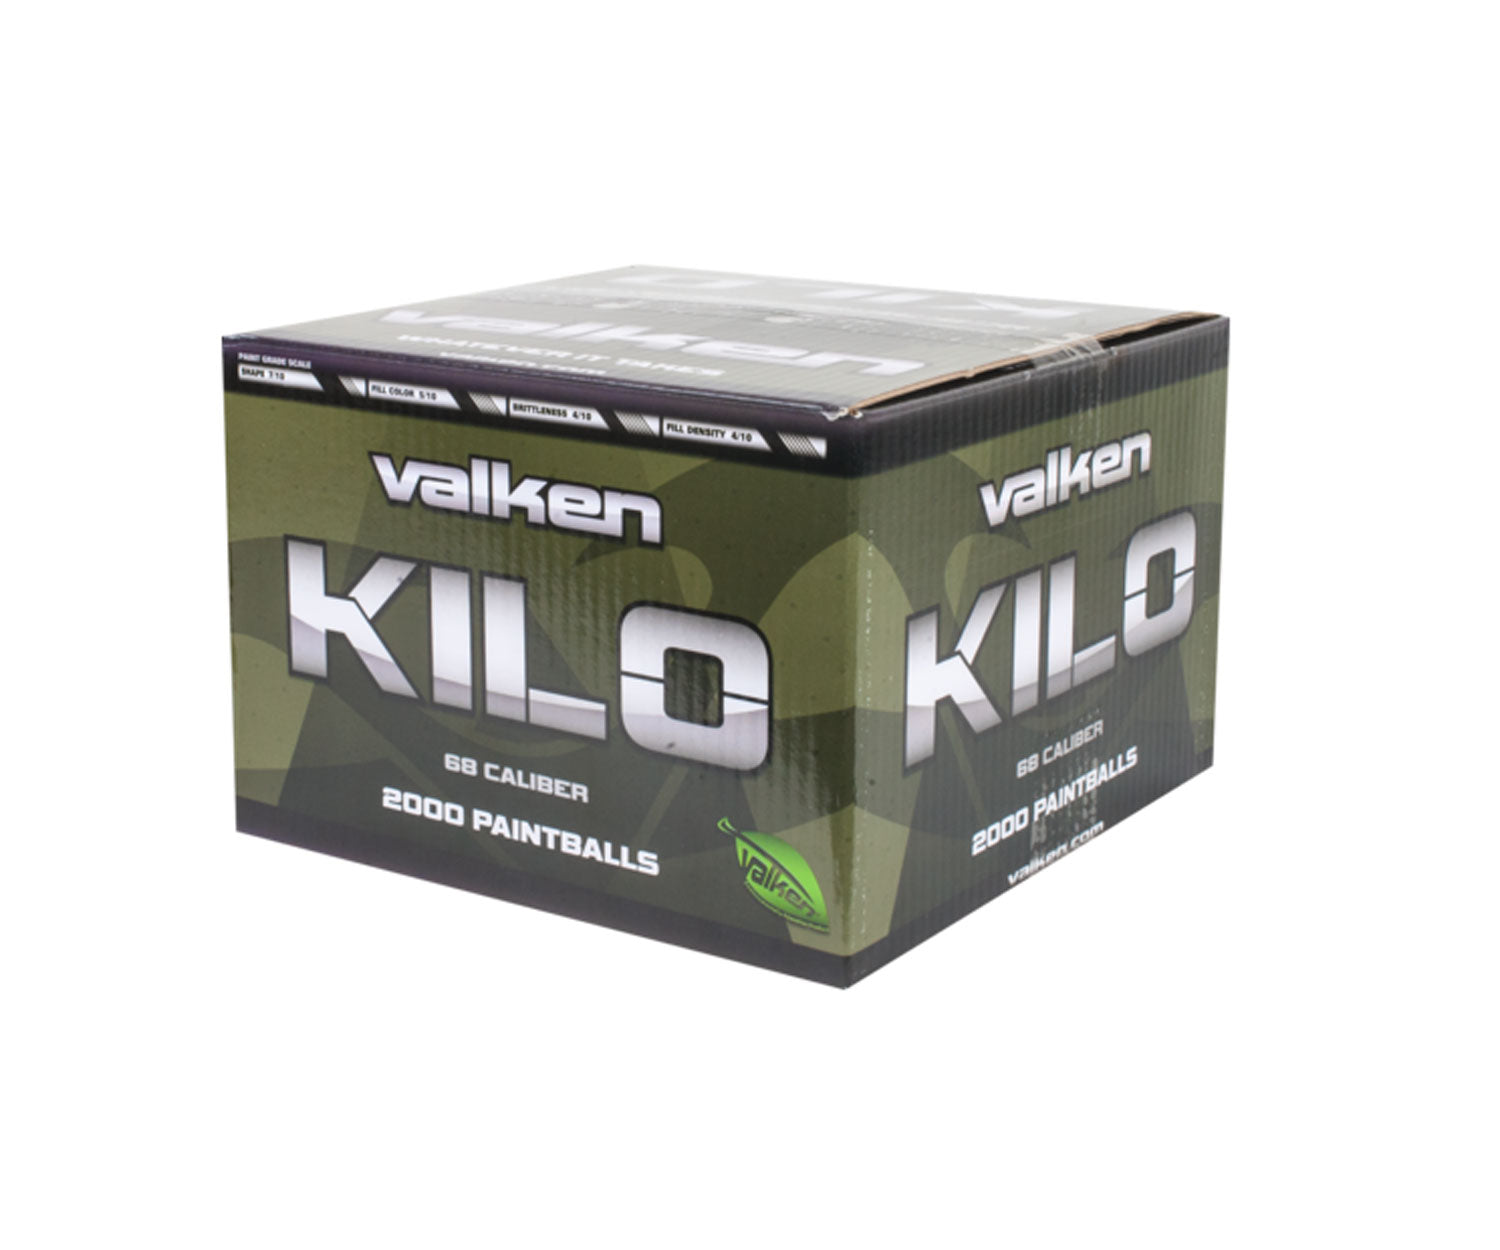 Valken Kilo Paintballs - 2000 Count Case - Valken Paintball